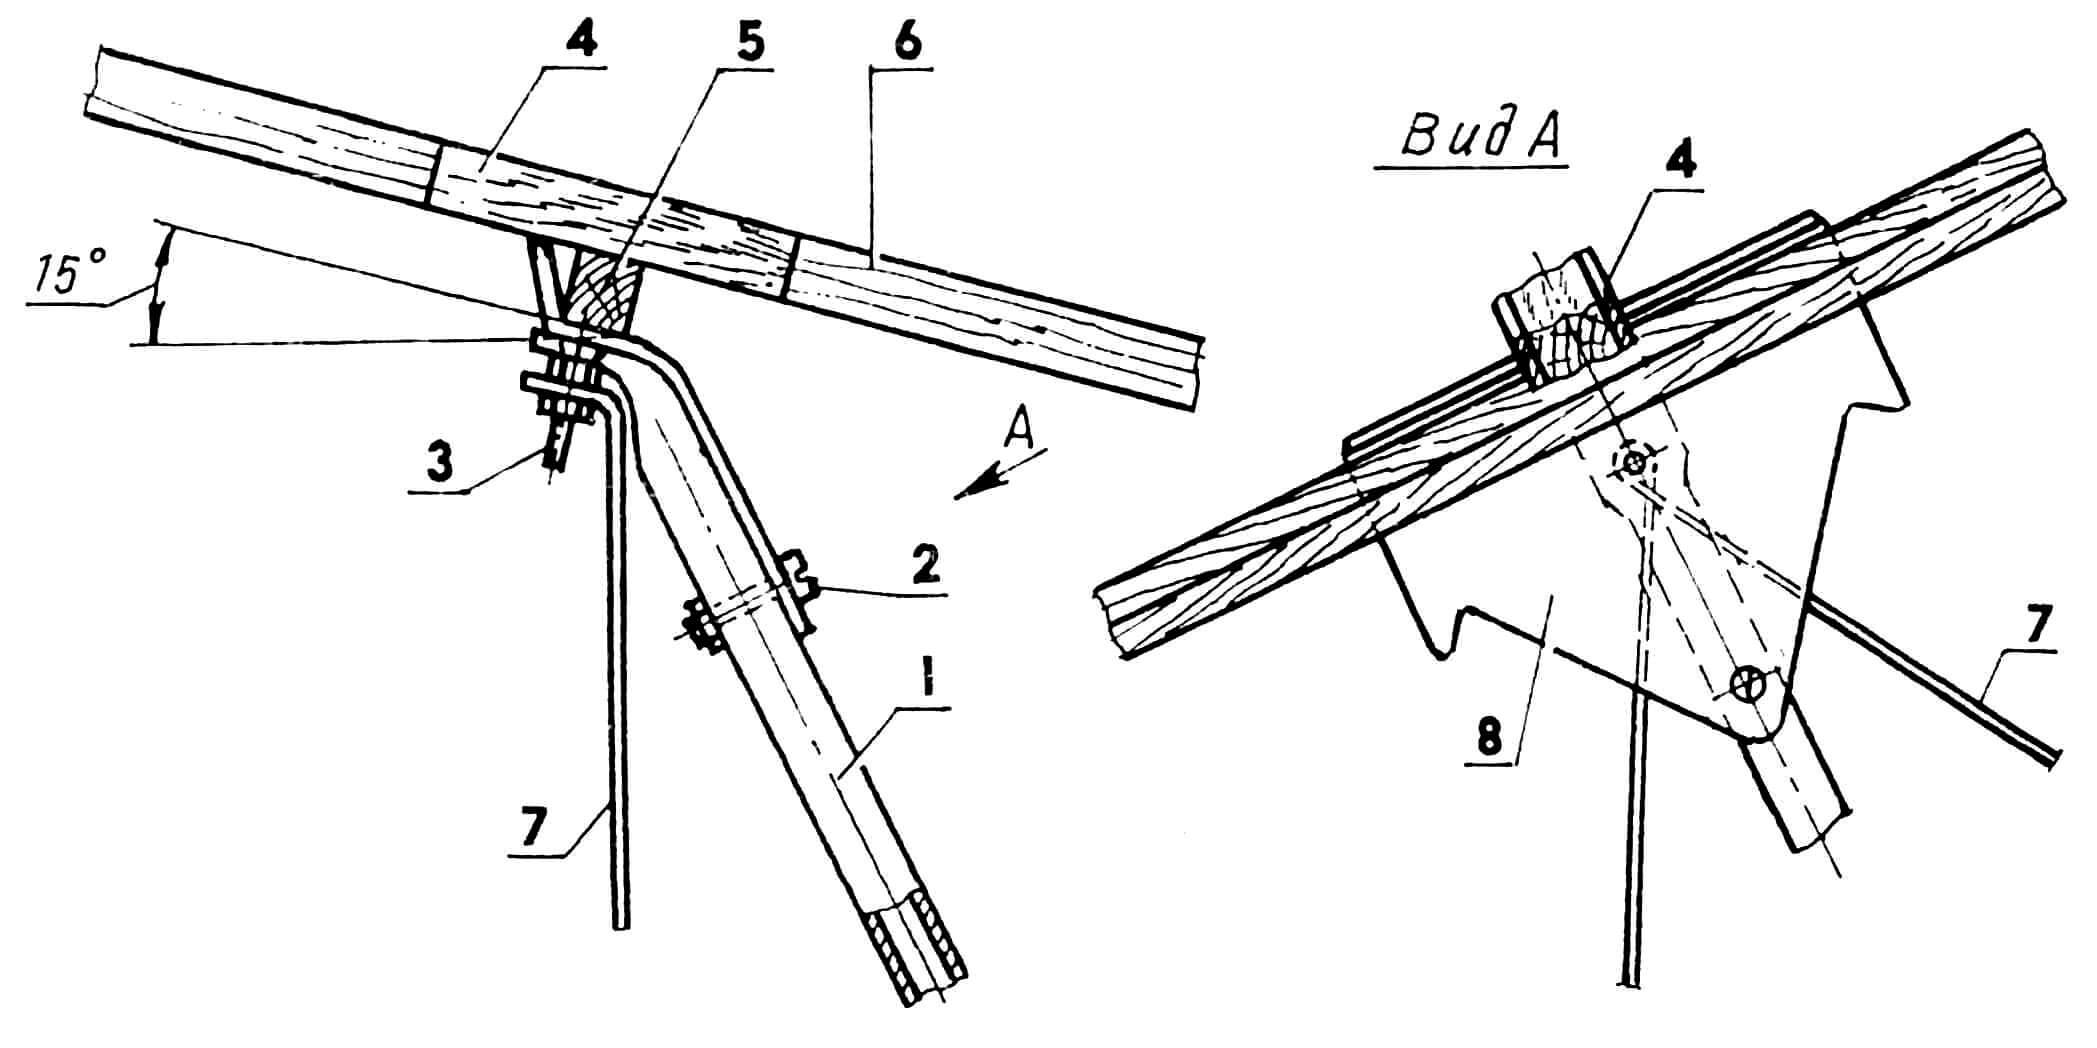 Стыковочный узел «пилон-крыло»: 1 — пилон; 2, 3 — винты М3 с гайками крепления ложемента к пилону; 4 — накладка; 5 — балка поперечная; 6 — балка центральная; 7 — растяжка (проволока ø 0,3); 8 — ложемент (дюралюминий s1).